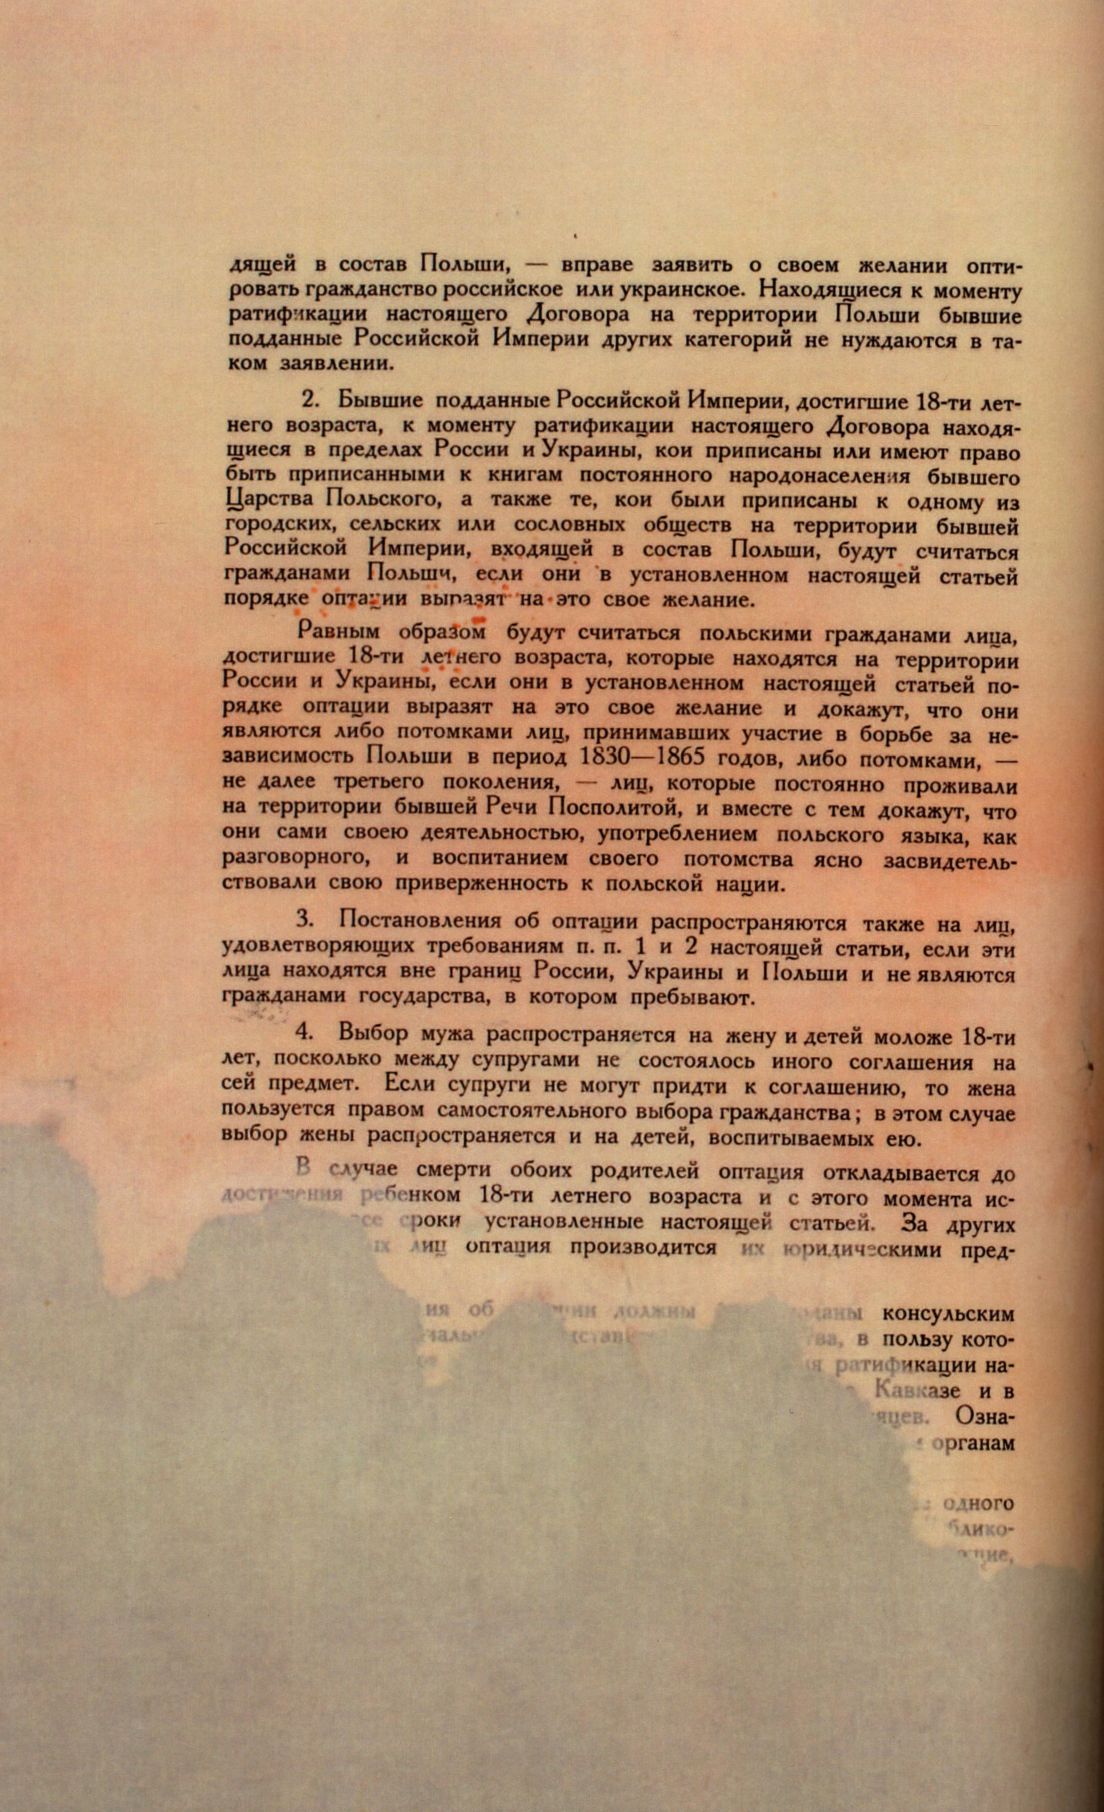 Traktat Pokoju między Polską a Rosją i Ukrainą podpisany w Rydze dnia 18 marca 1921 roku, s. 72, MSZ, sygn. 6739.